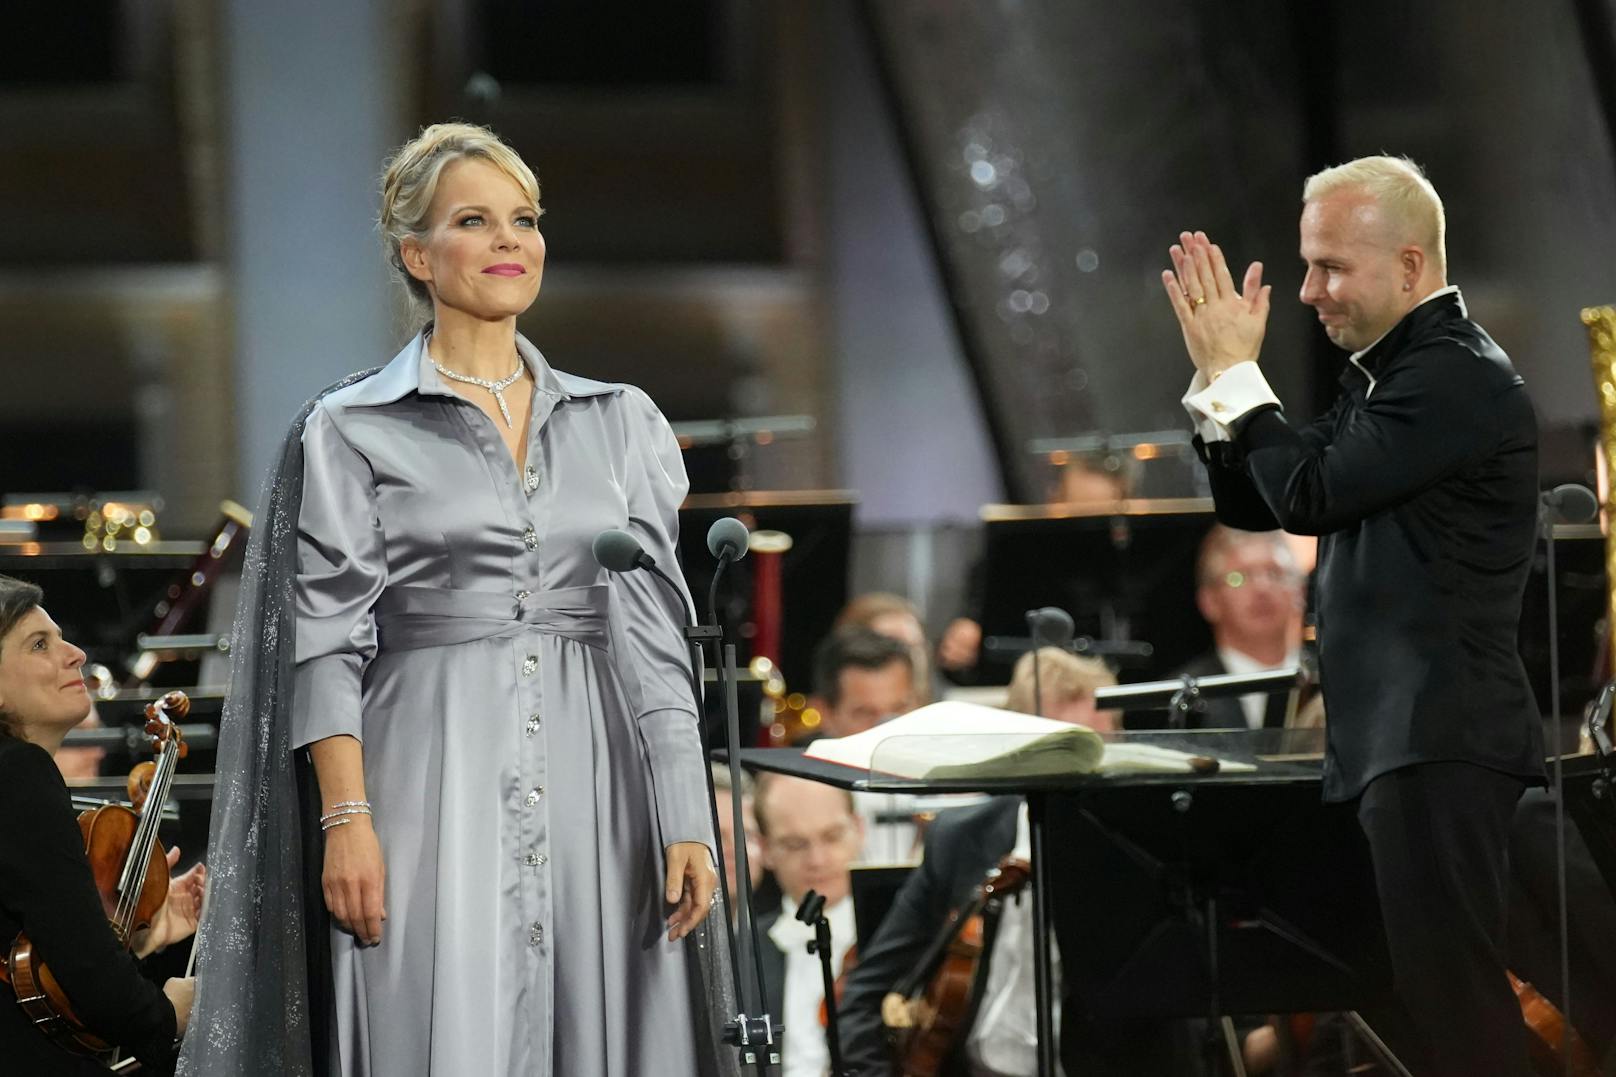 Auch die lettische Mezzo-Sopranistin und Publikumsliebling <strong>Elina Garanca</strong> gibt hier ihr Debut. Das Programm reicht von Ausschnitten aus Georges Bizets Oper "Carmen" über Werke von Berlioz, Gounod und Saint-Saens bis zu Maurice Ravels "Boléro".